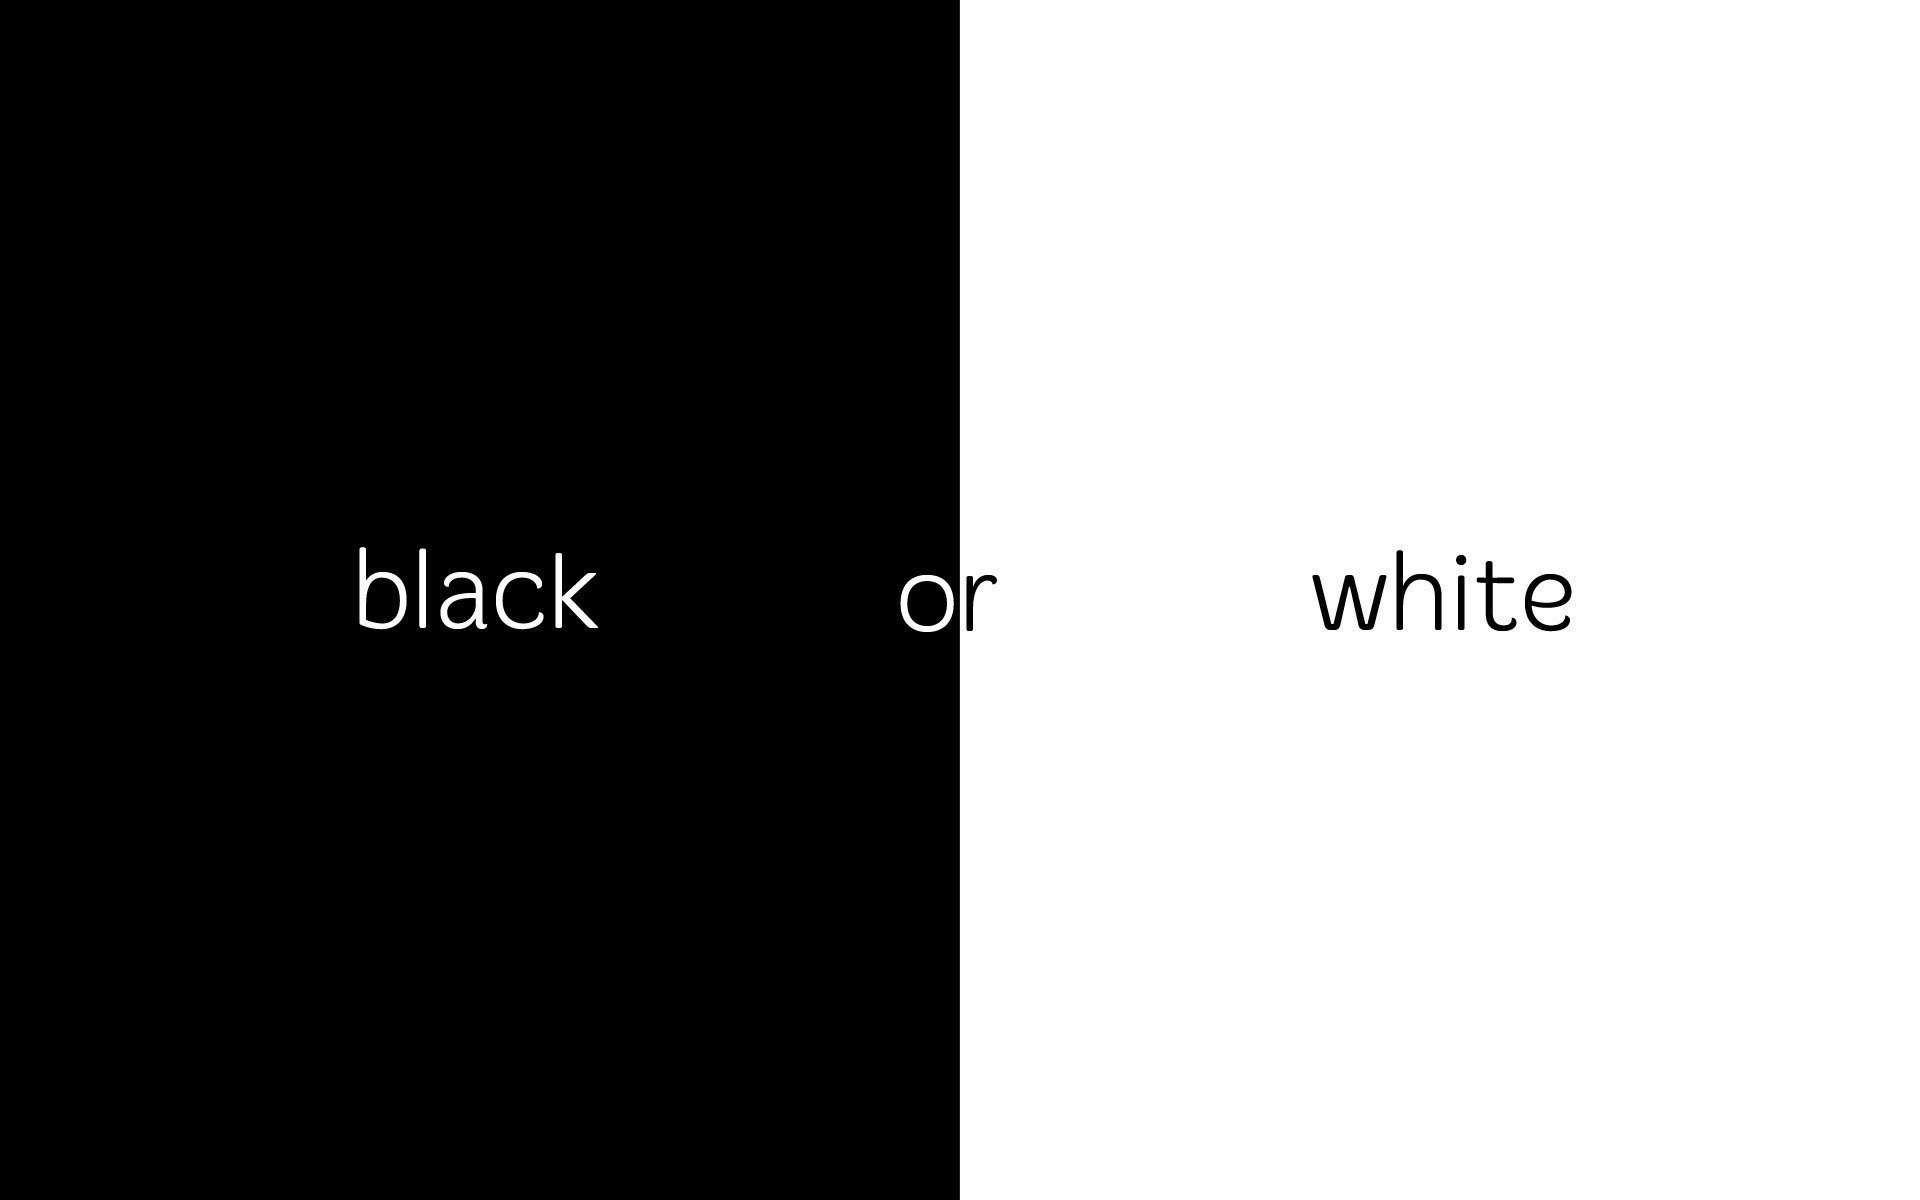 Обои для лп на 2 телефона. Парные обои на телефон черные. Парные обои на черном фоне. Надписи на черном фоне парные. Черно белый цвет.